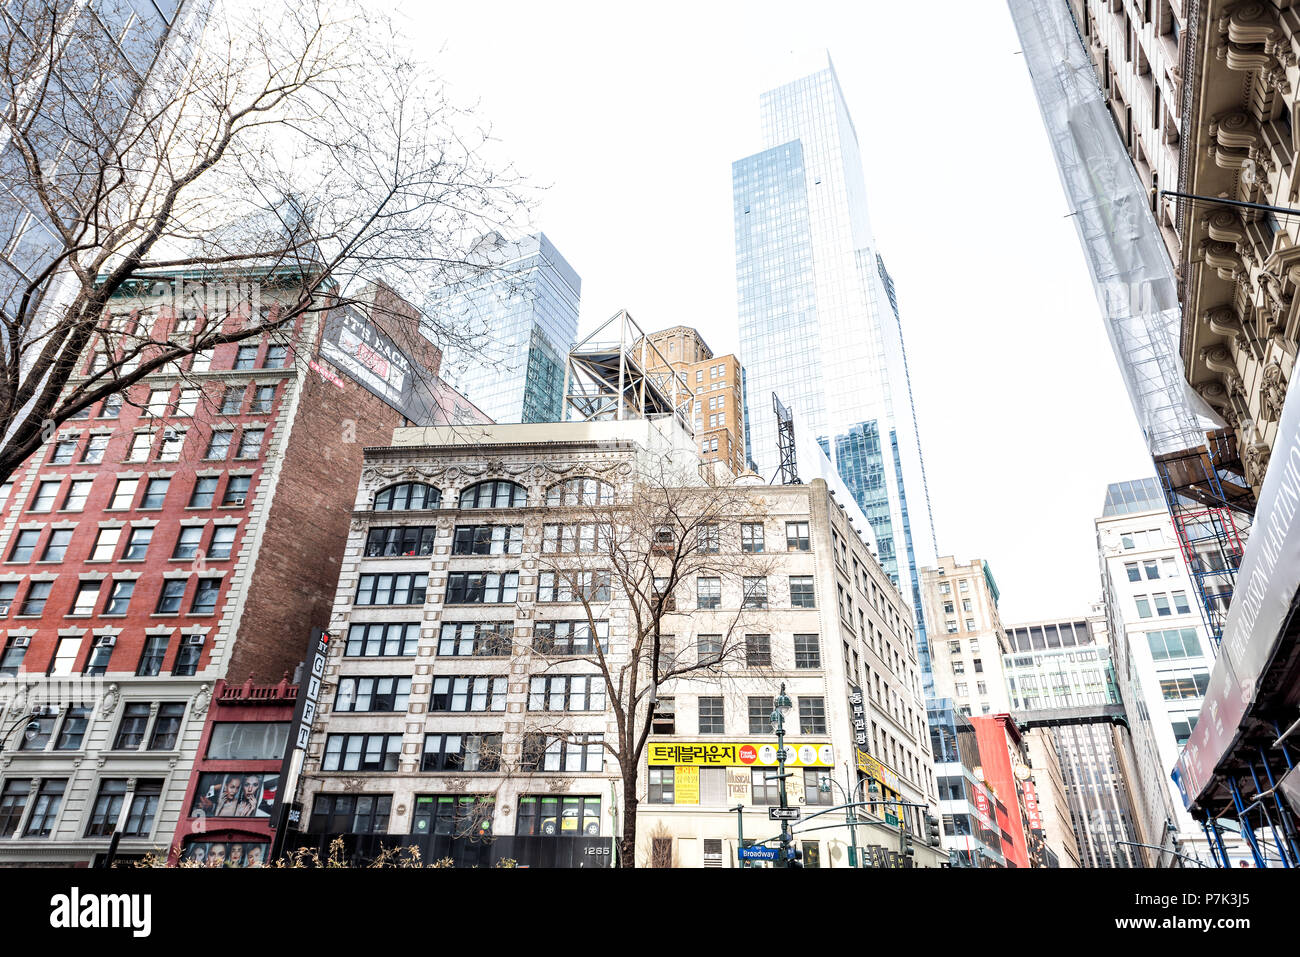 La ville de New York, USA - 7 Avril 2018 : New York Manhattan Midtown bâtiments de Herald Square, texte coréen Koreatown signe, Broadway, West 32nd Street Banque D'Images